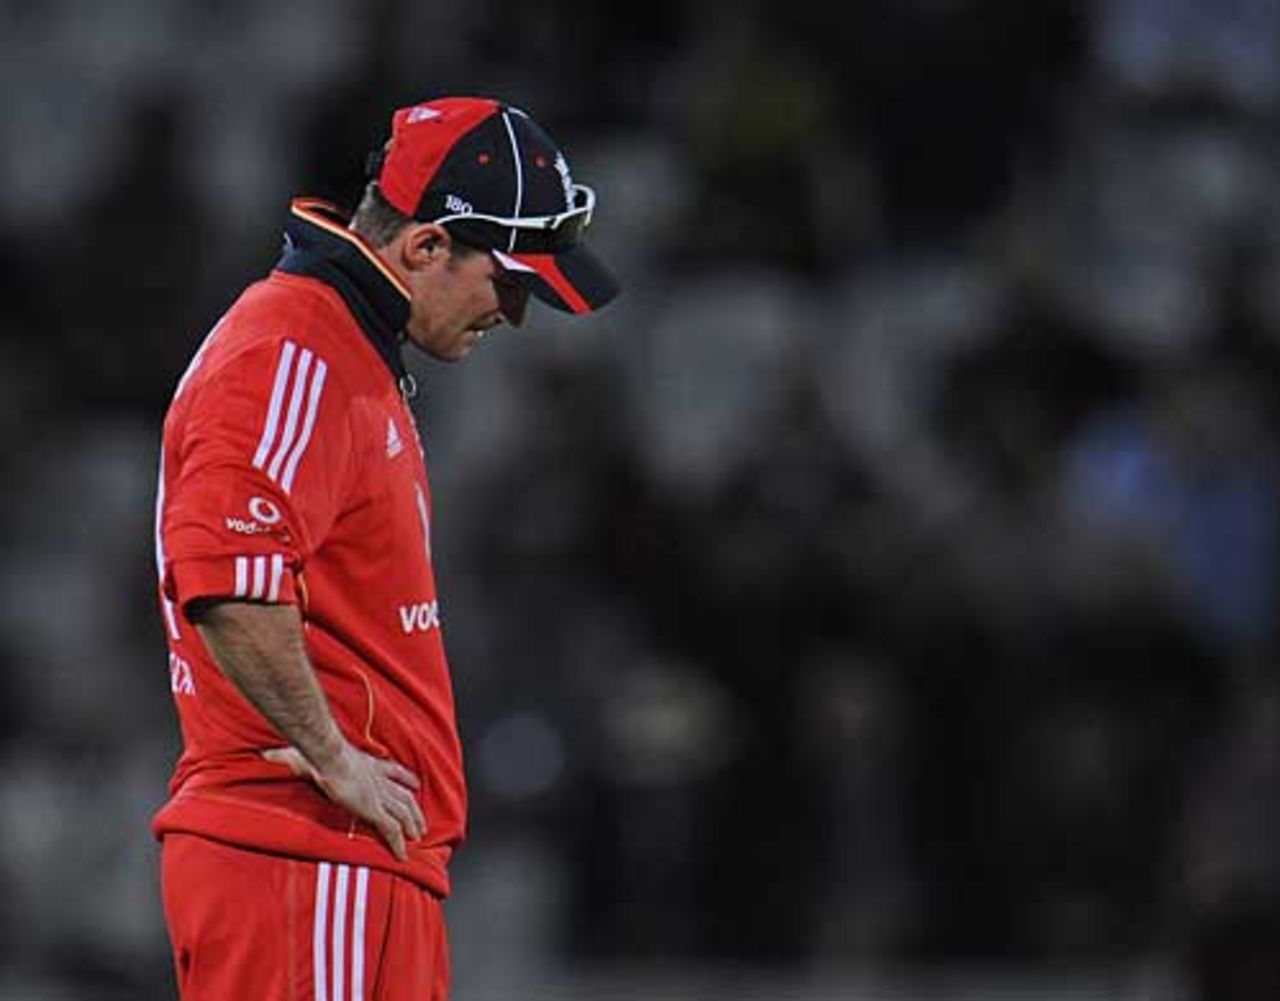 Andrew Strauss still can't find that winning feeling, England v Australia, 5th ODI, Trent Bridge, September 15, 2009